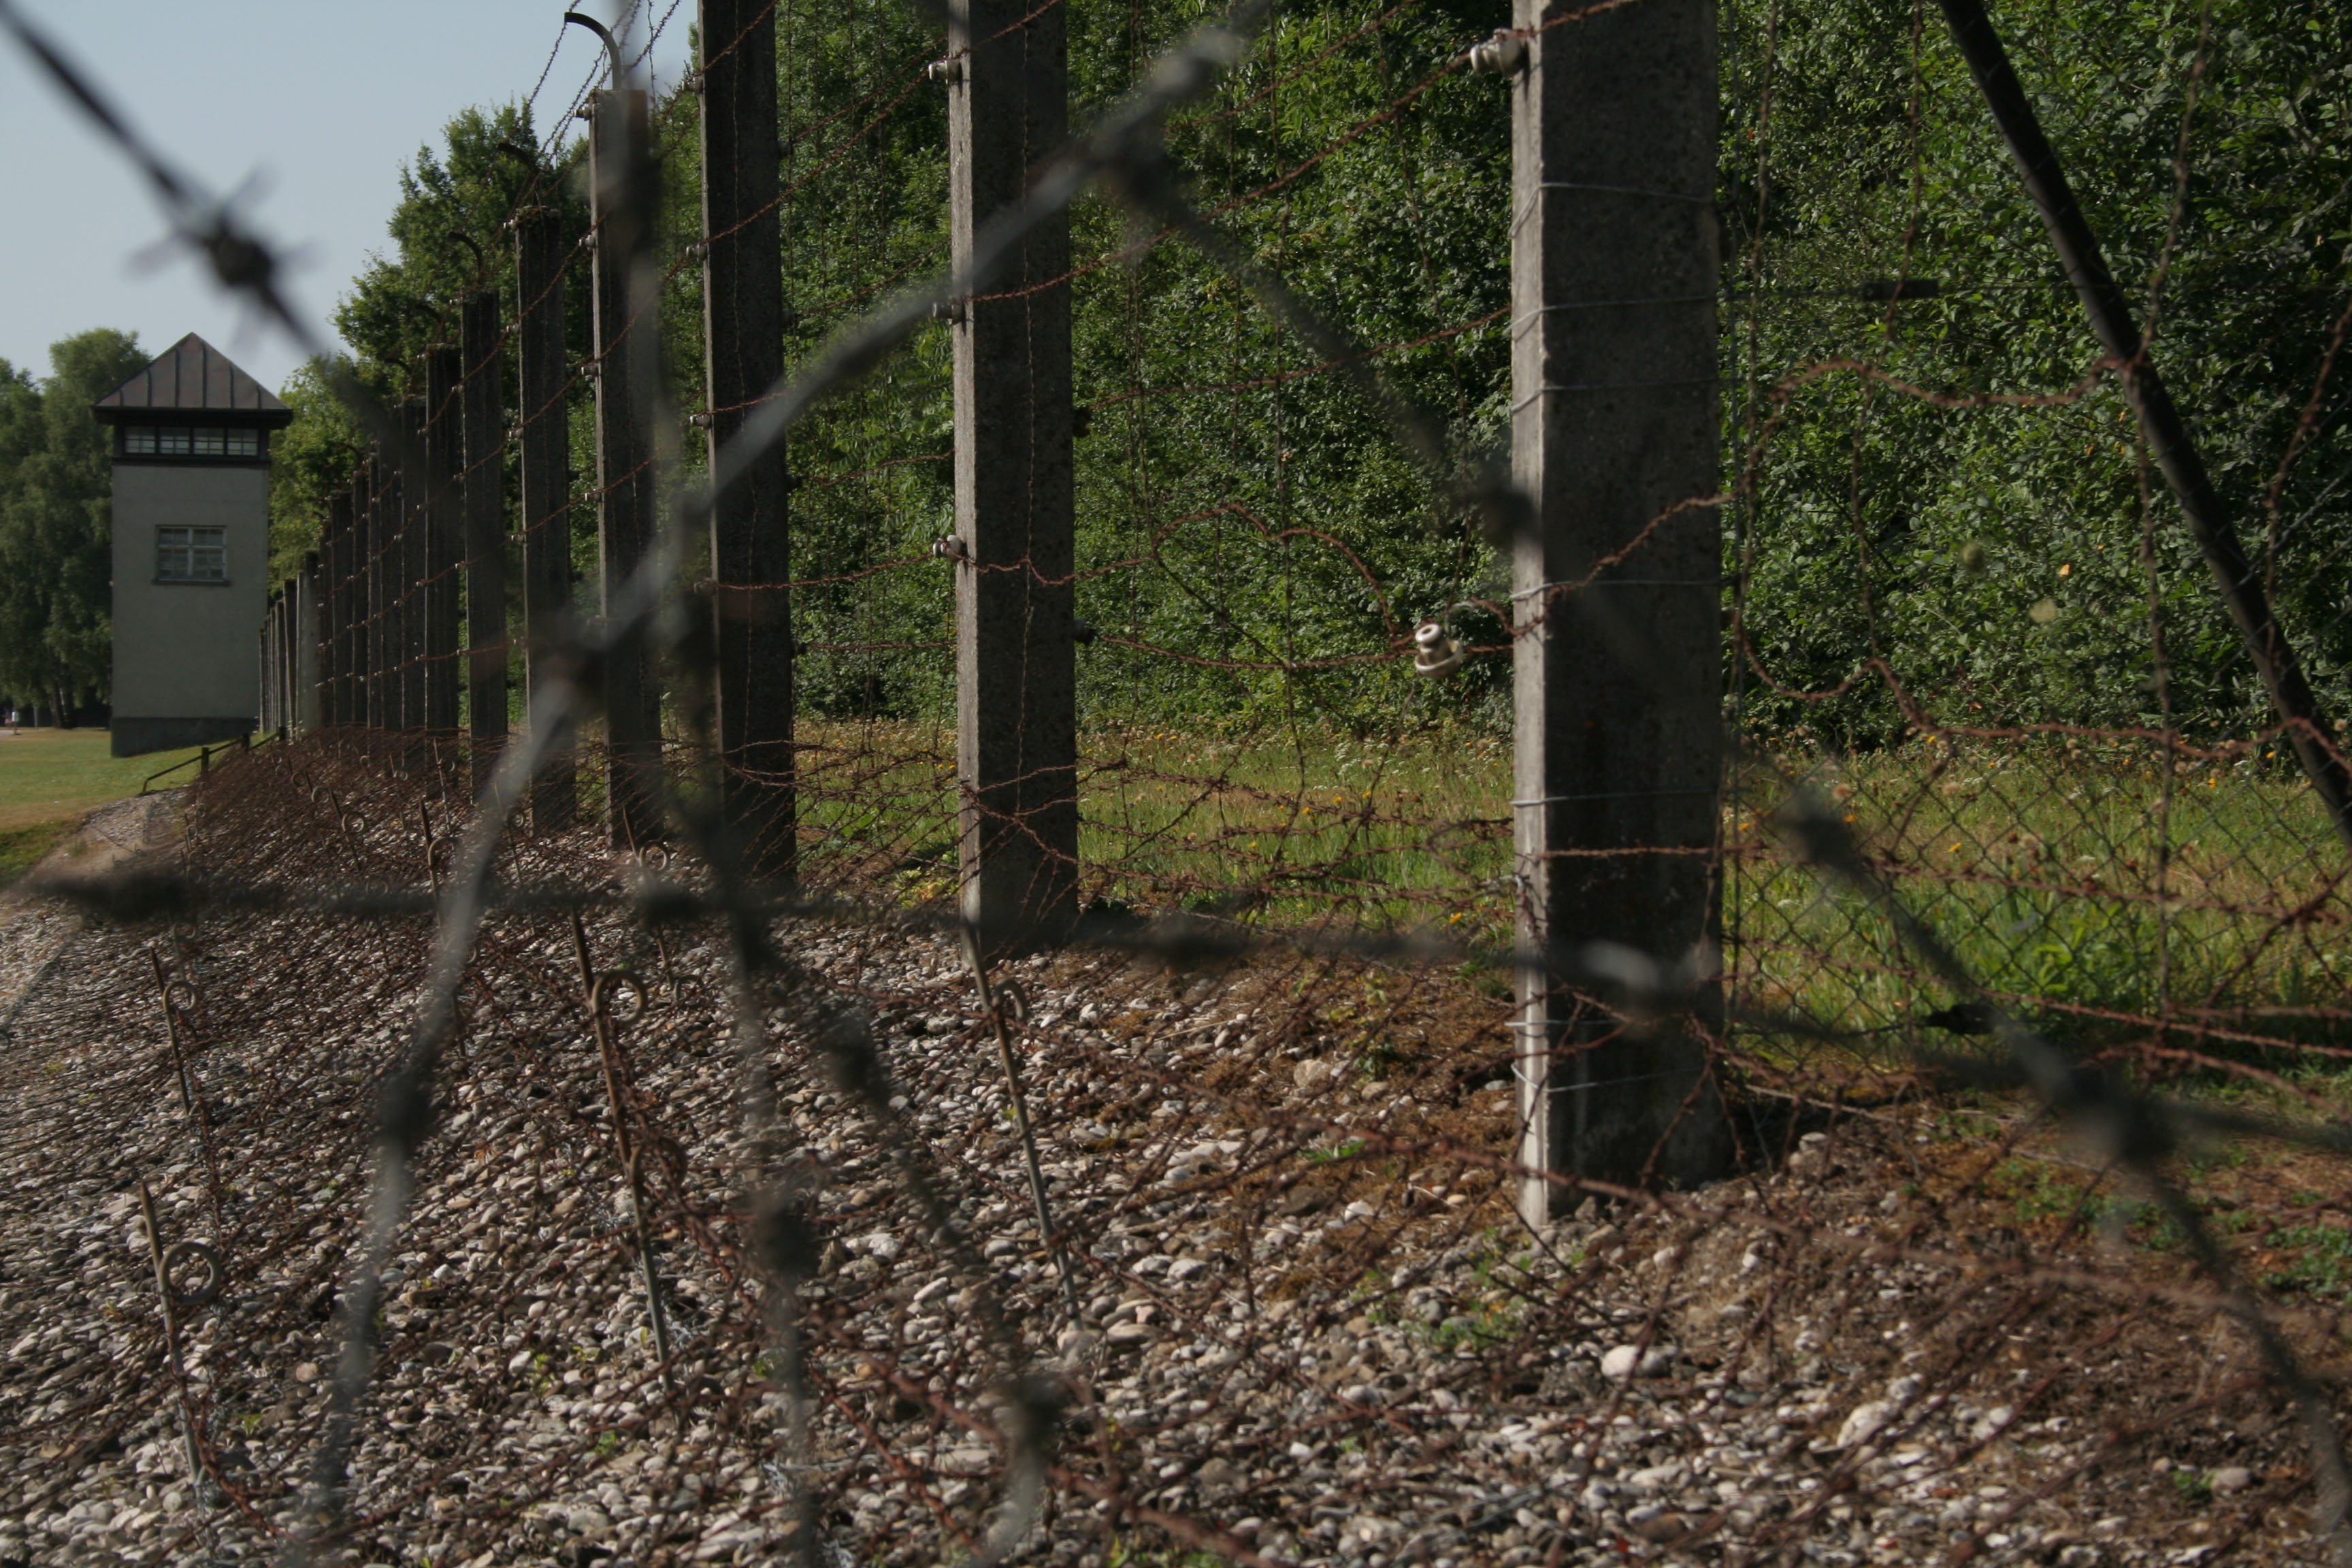 Dia 10. Dachau – Munich - 14 días por la Alsacia y Selva Negra en furgoneta y con perro - Agosto 2013 (3)